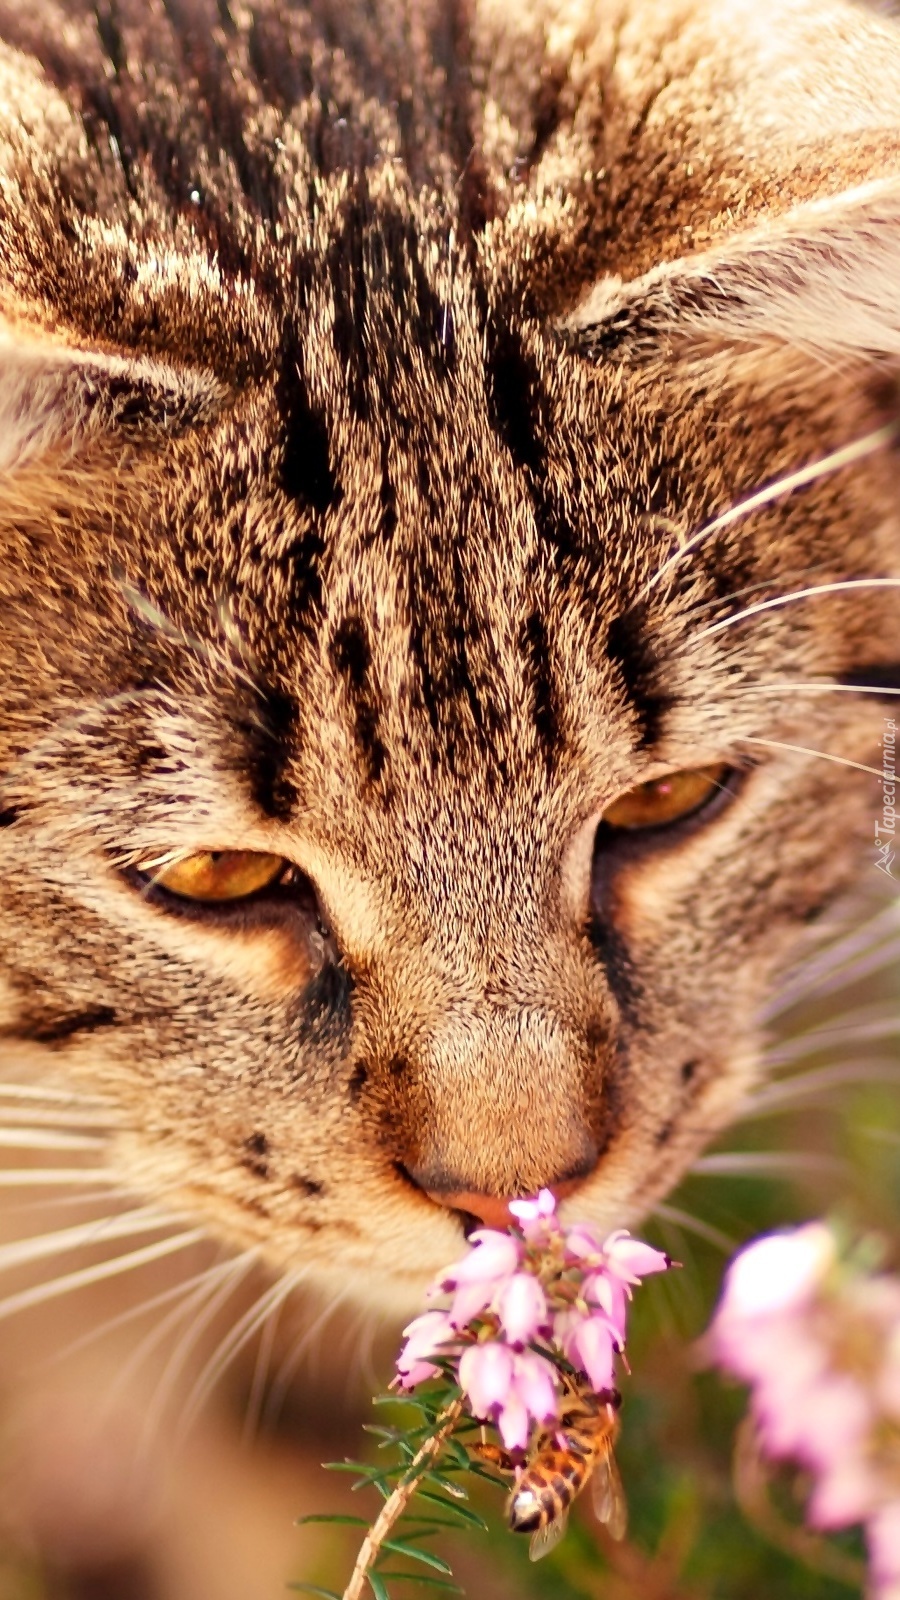 Kotek wąchający kwiaty